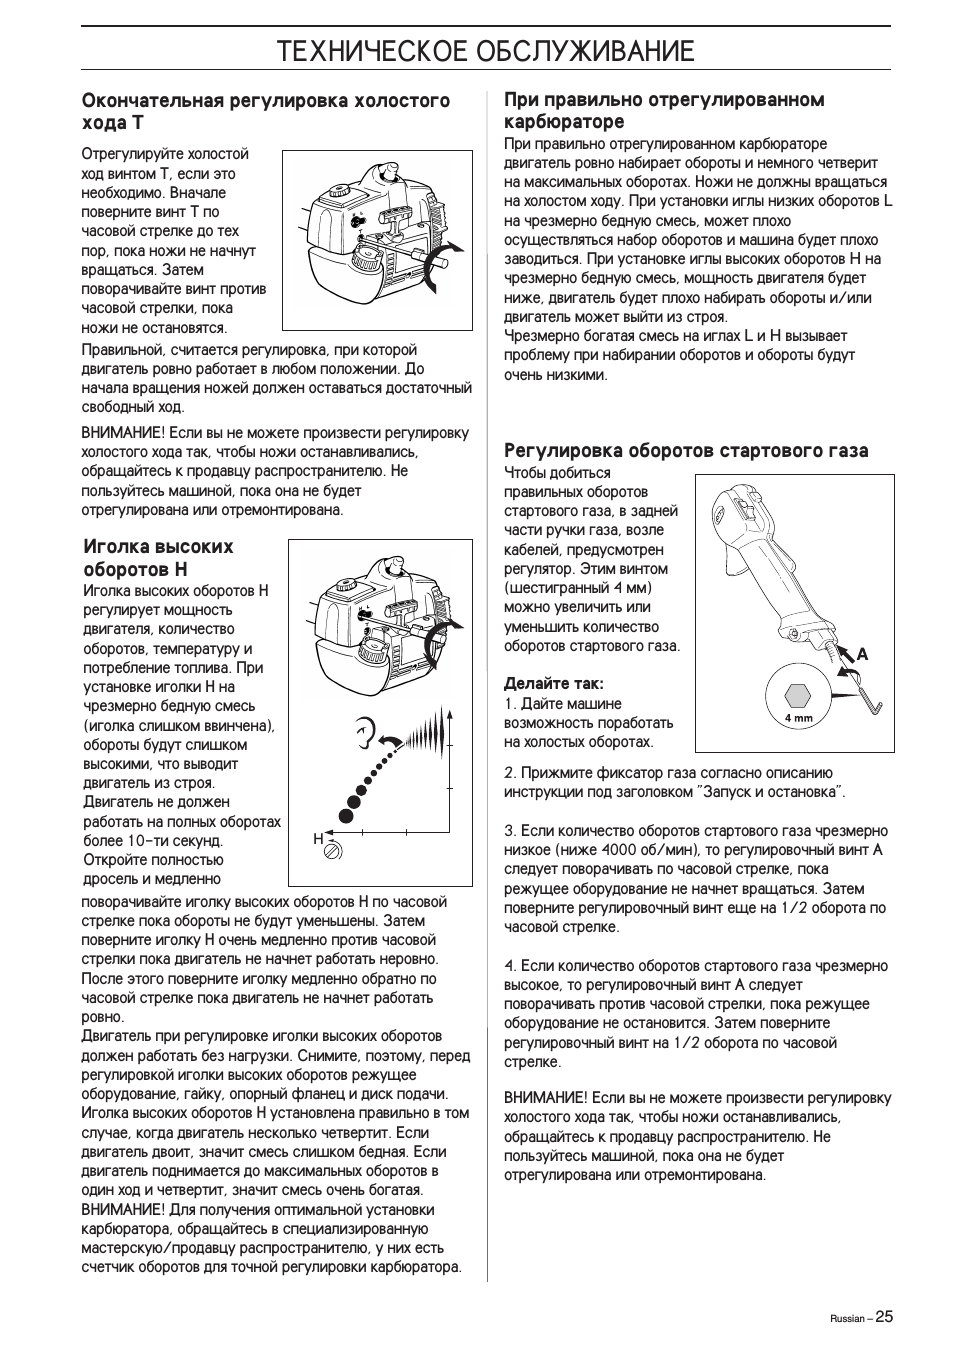 Обзор бензопилы Хускварна 142 — технические характеристики, регулировка карбюратора и ремонт своими руками